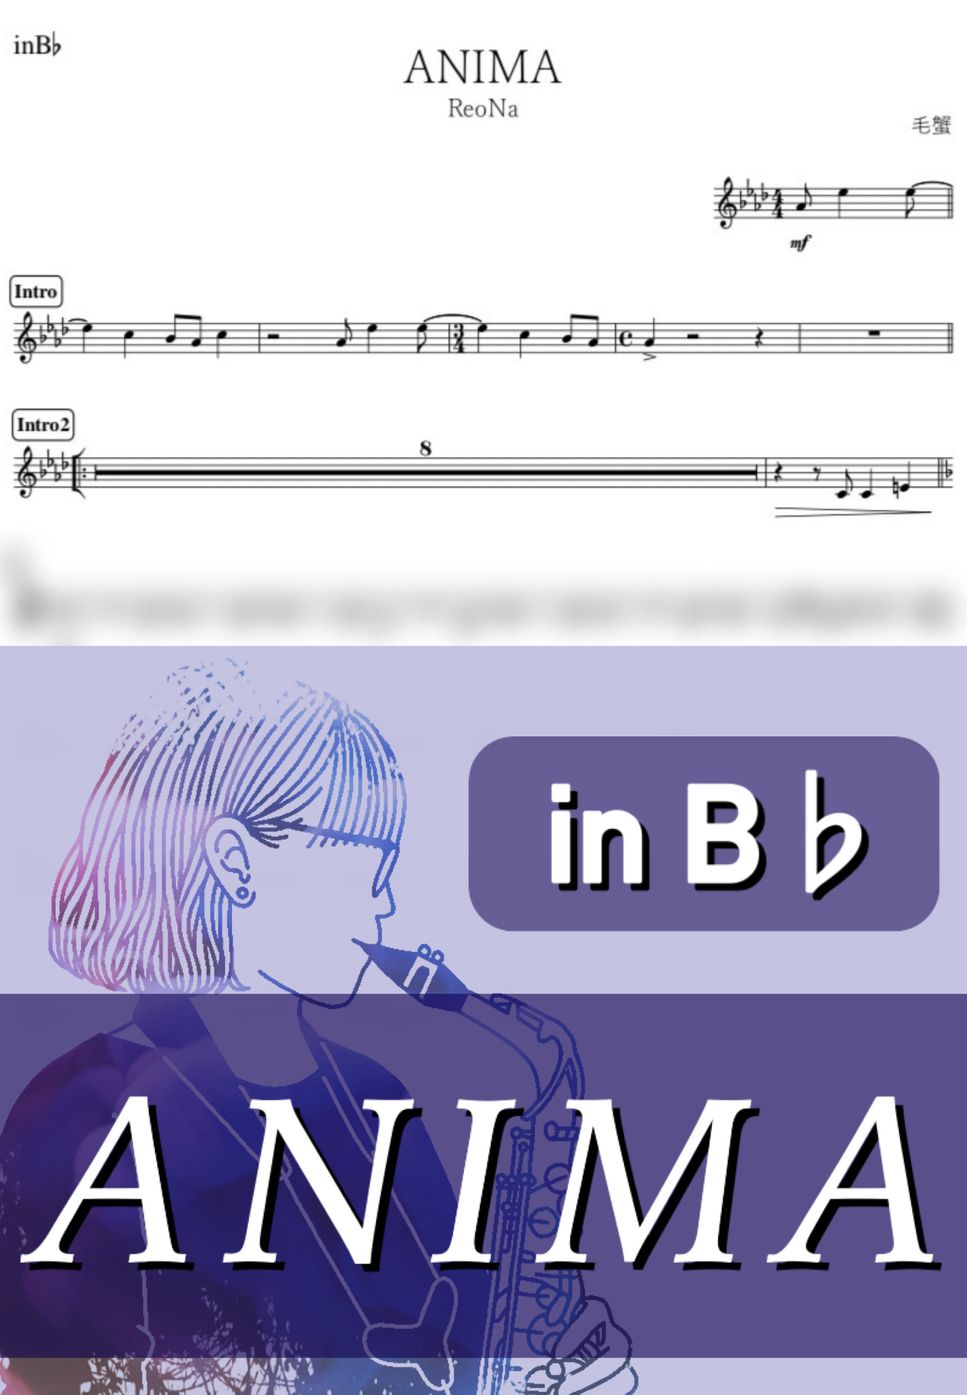 ReoNa - ANIMA (B♭) by kanamusic